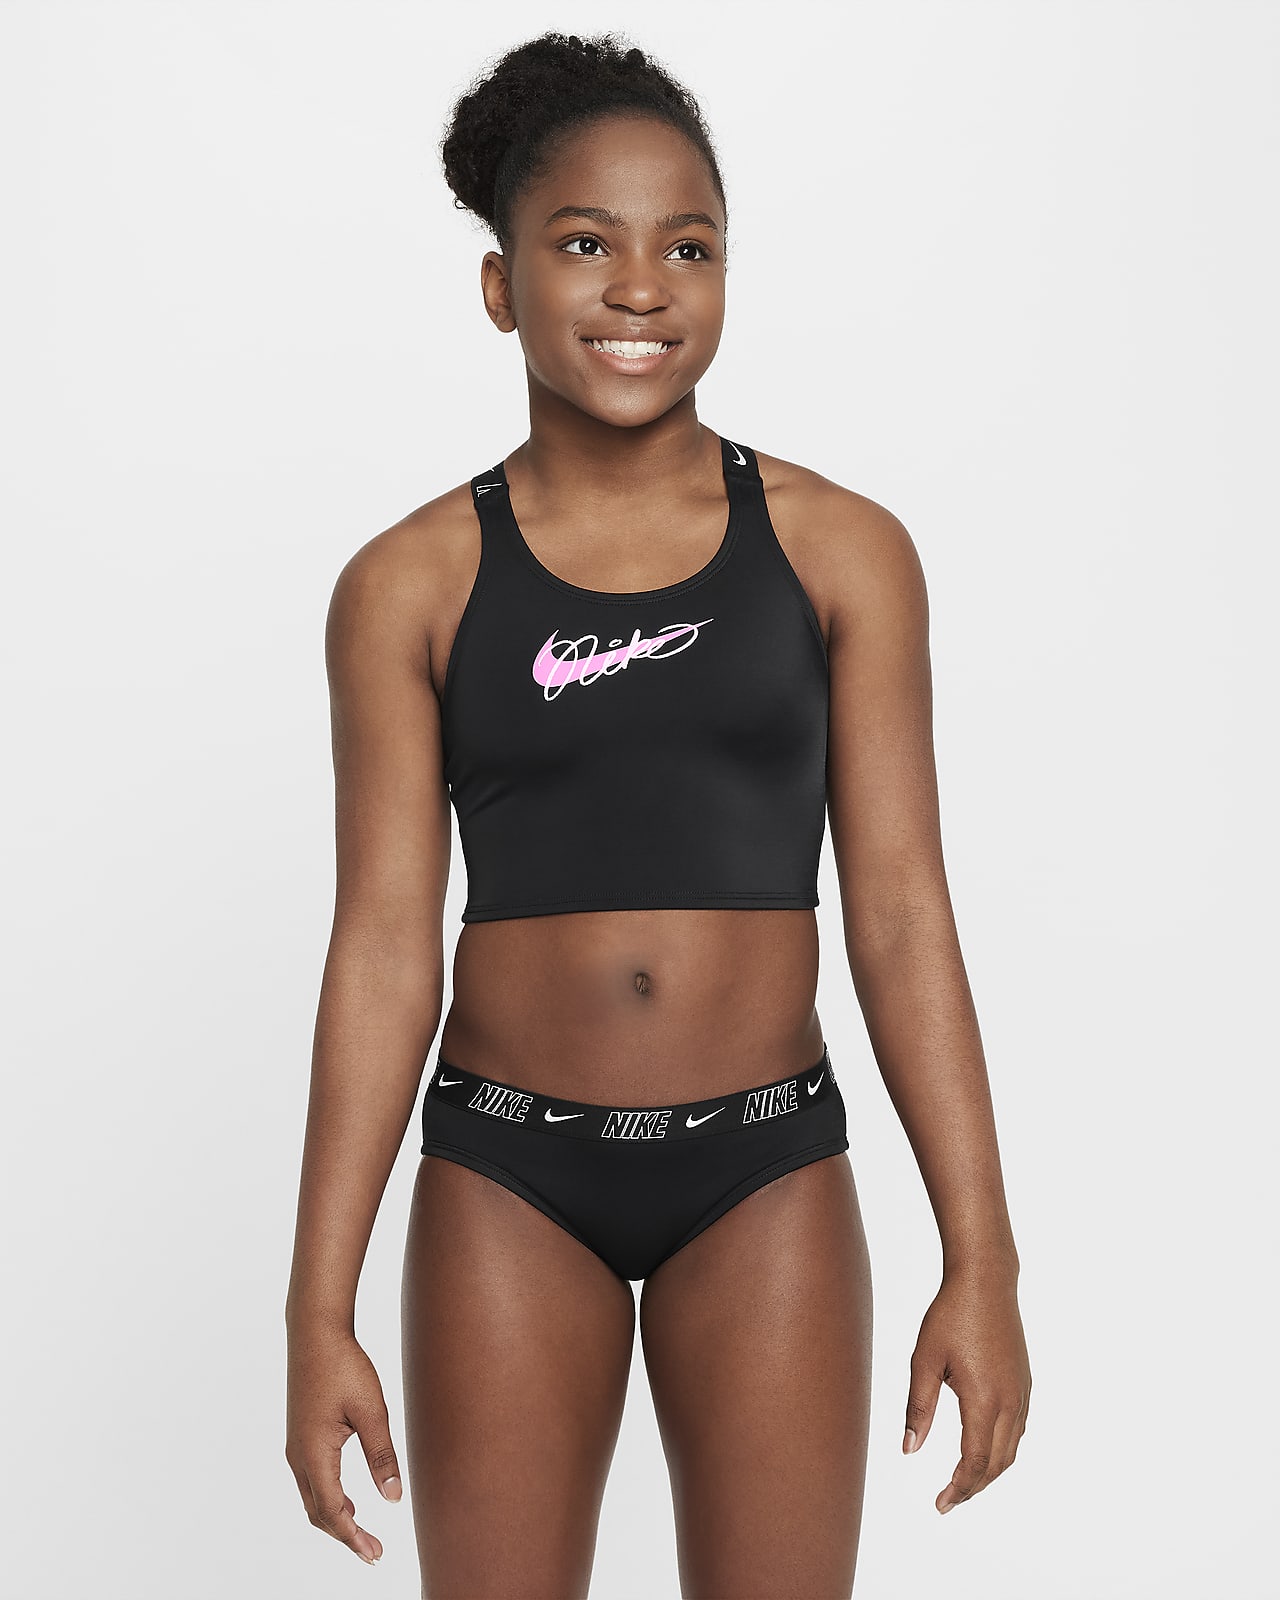 Nike Swim midkiniset met gekruiste bandjes voor meisjes